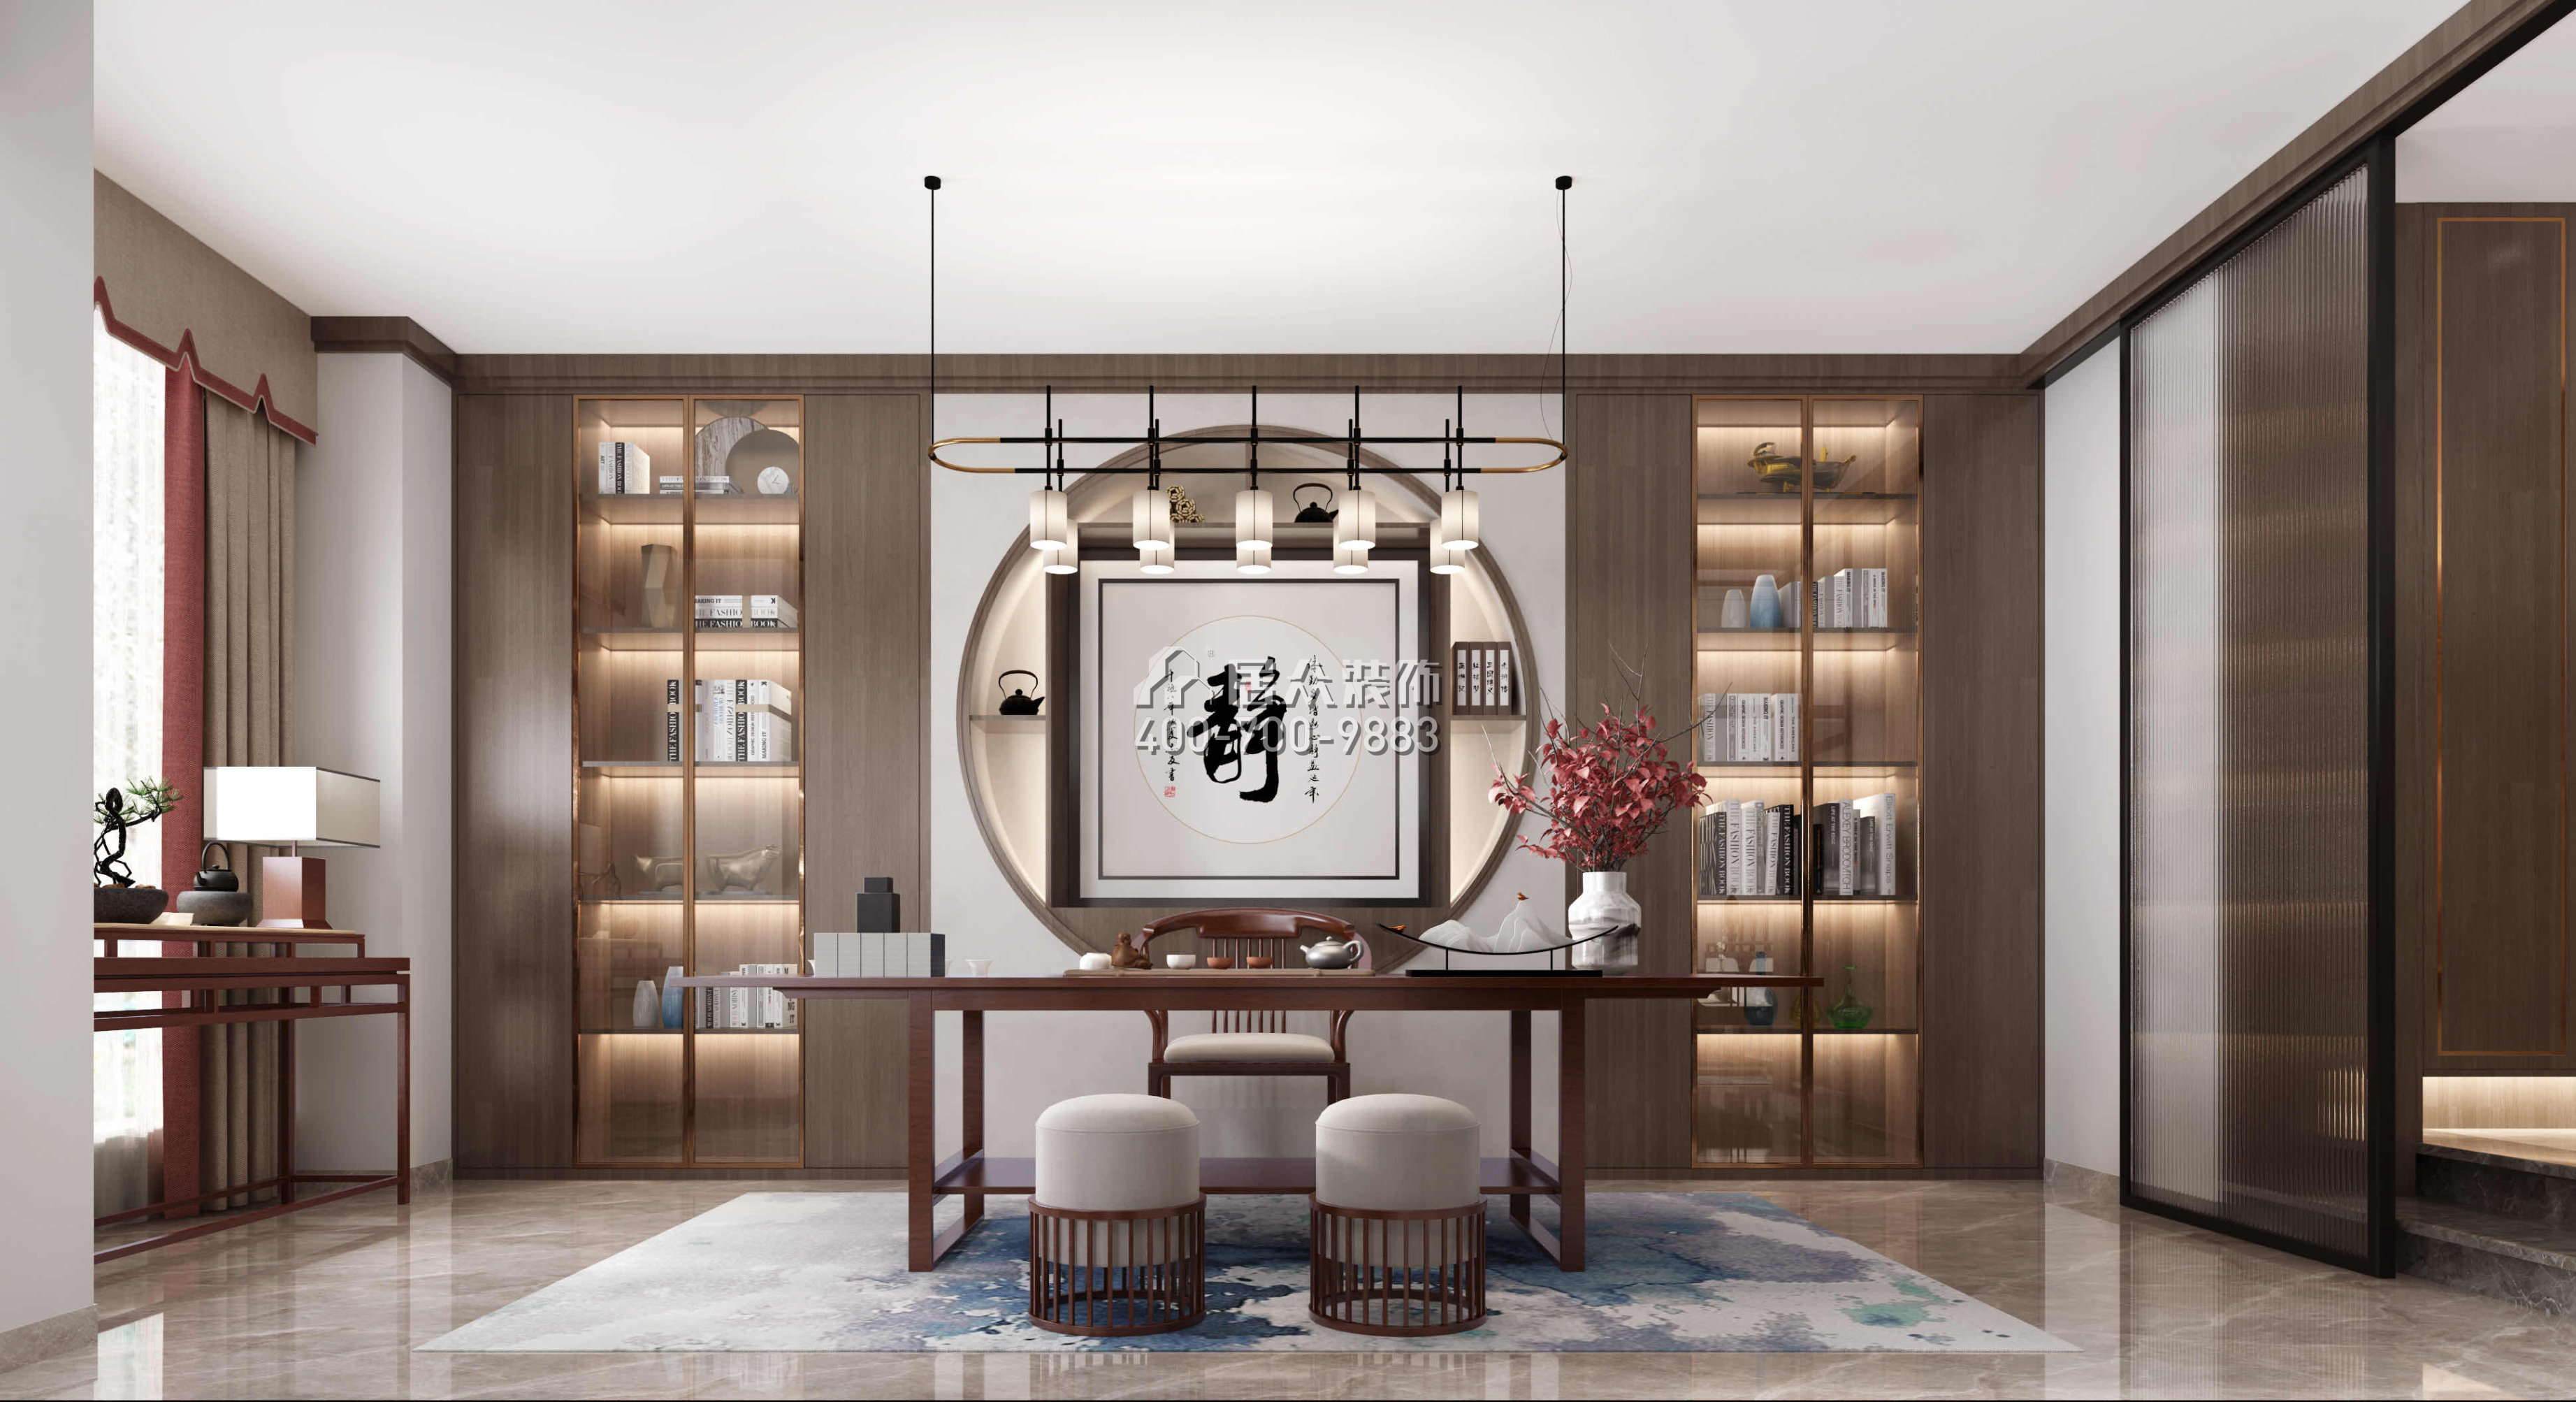 錦繡國際花城200平方米中式風格平層戶型茶室裝修效果圖